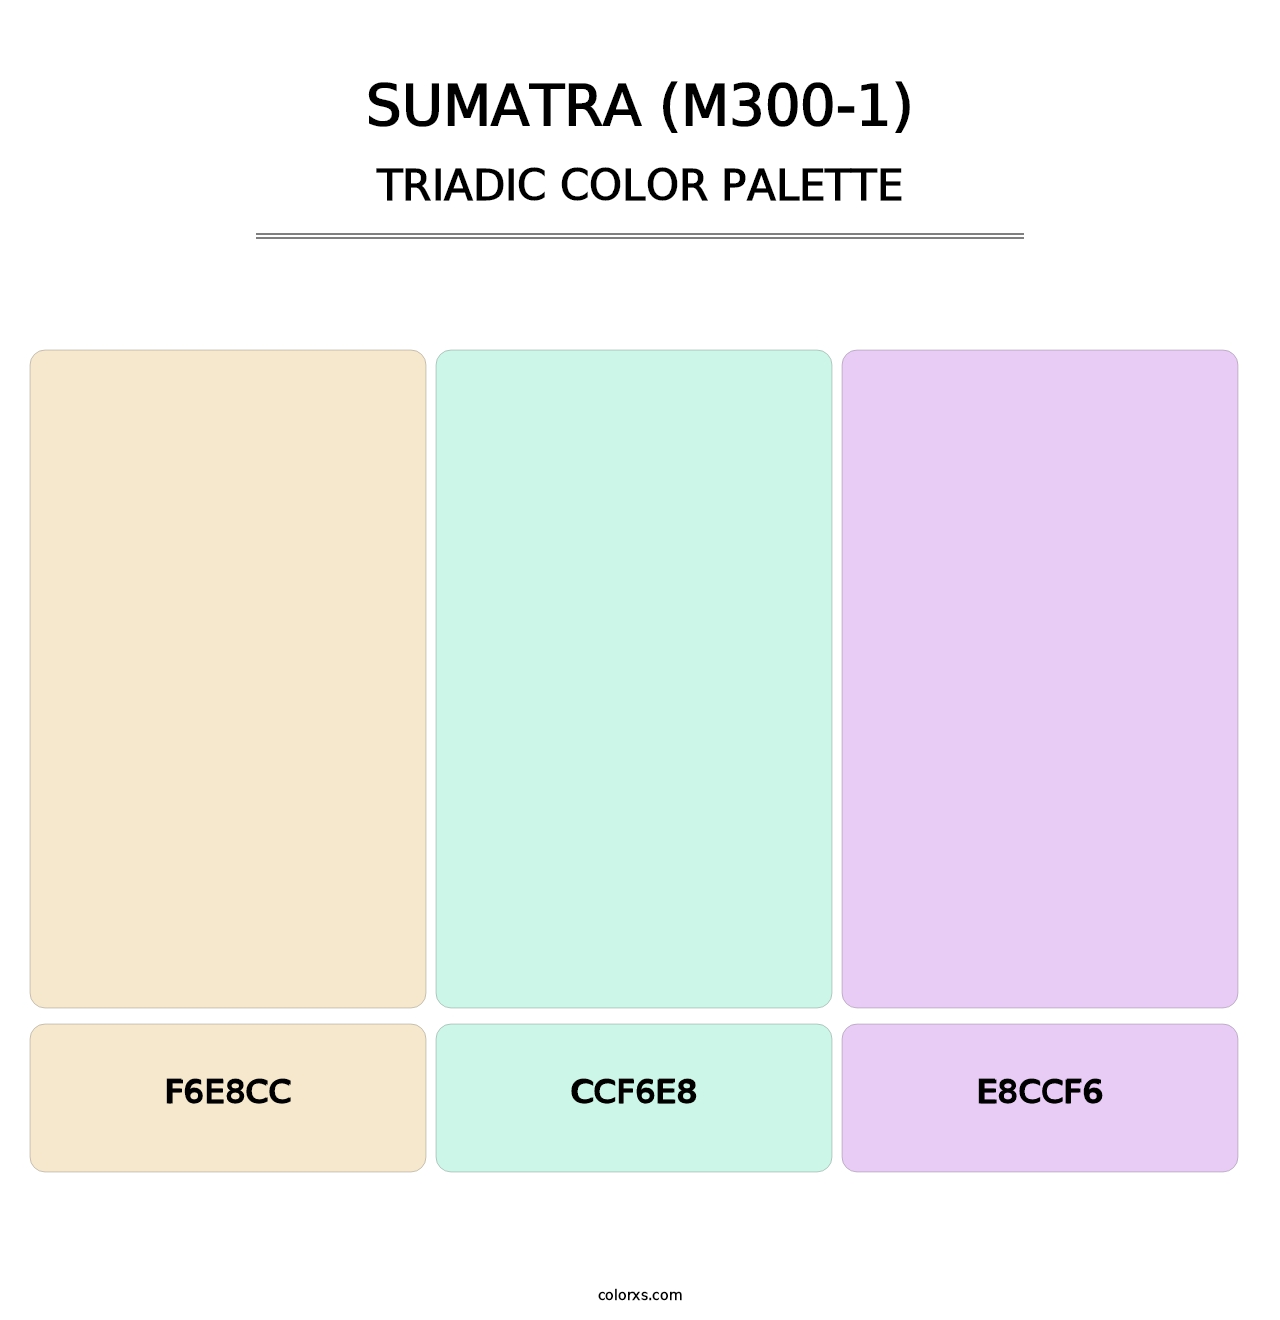 Sumatra (M300-1) - Triadic Color Palette